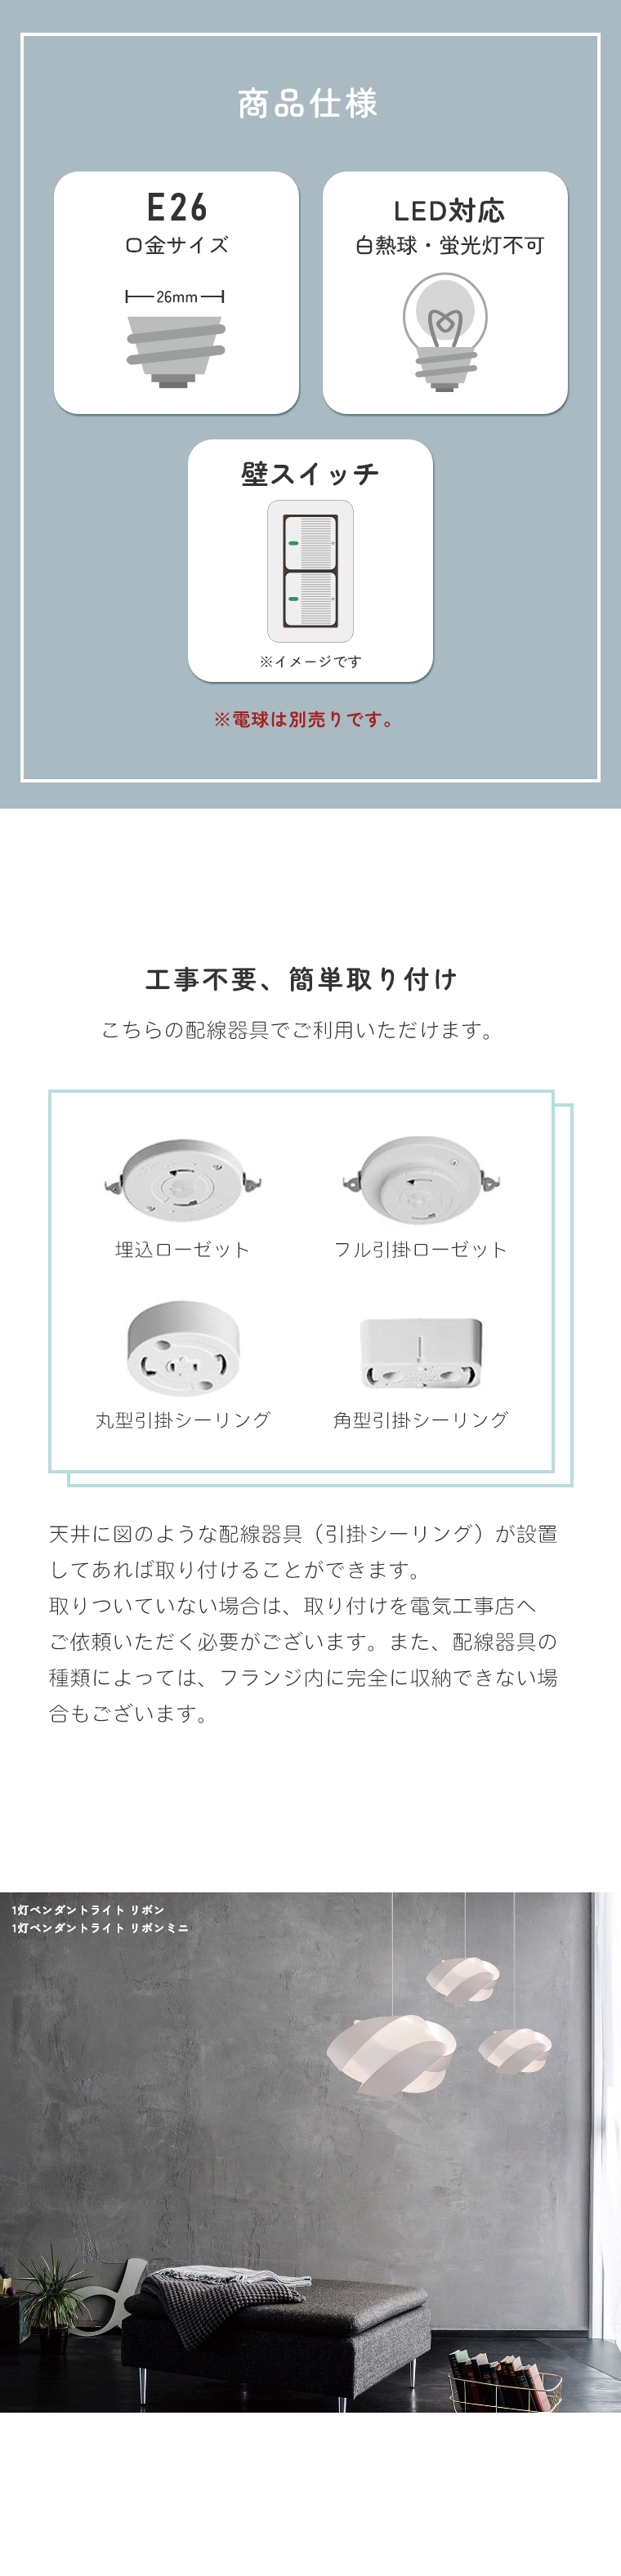 北欧テイストのシンプルなライト UMAGE (ウメイ) RIbbon mini (リボン